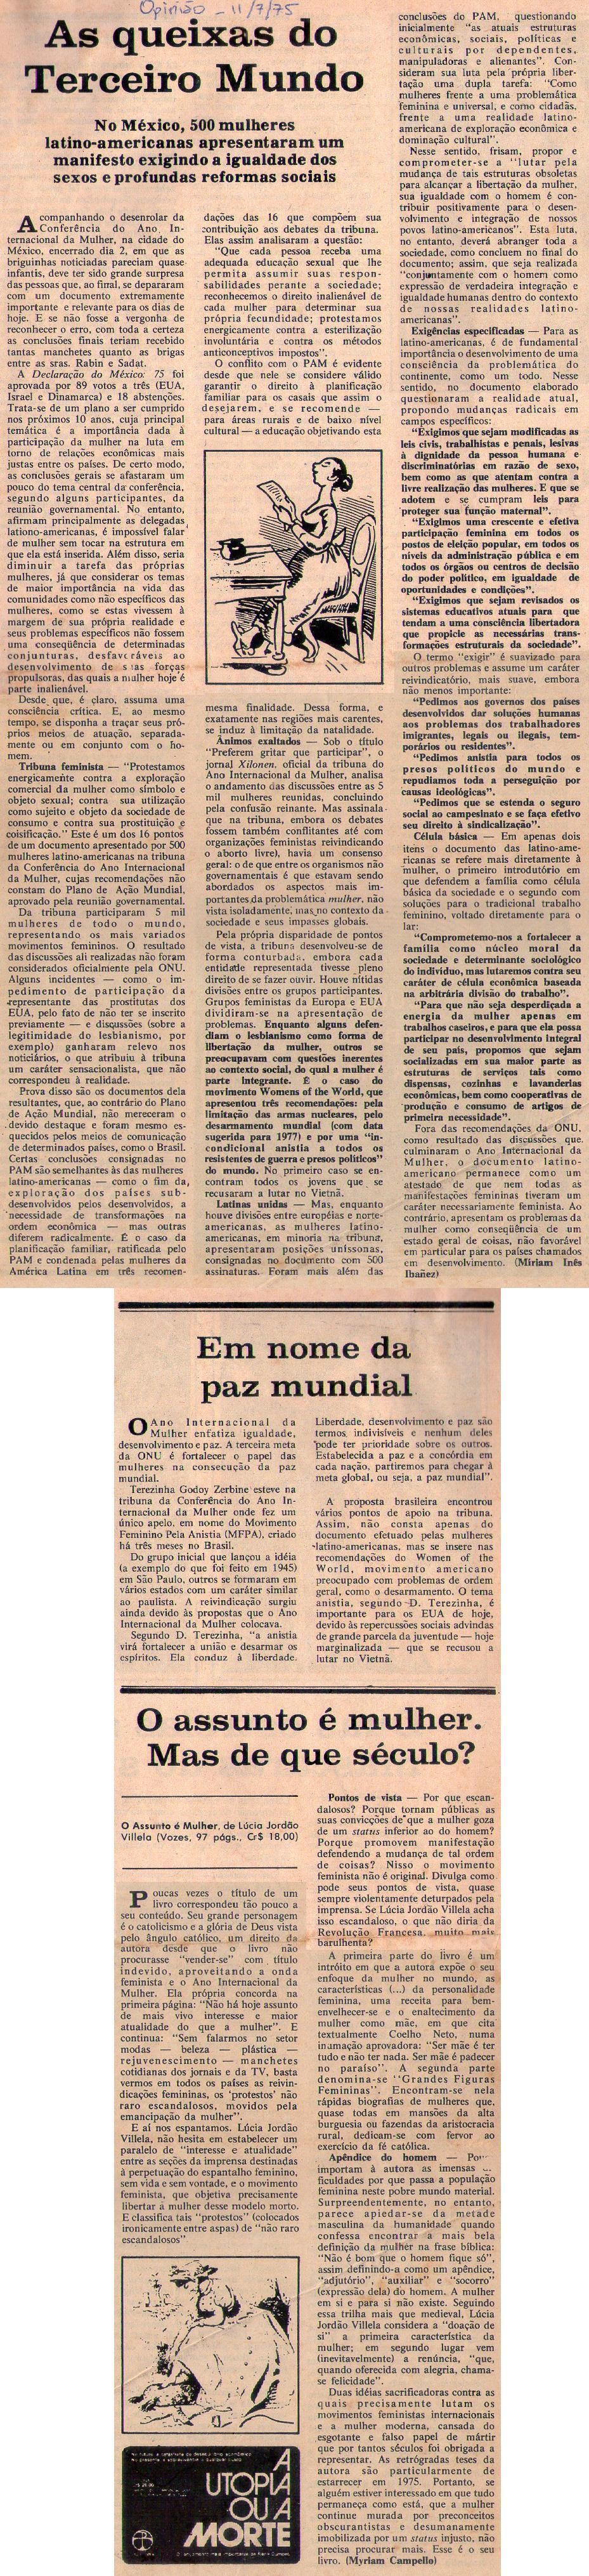 11 de Julho de 1975 - Opinião. As queixas do Terceiro Mundo.